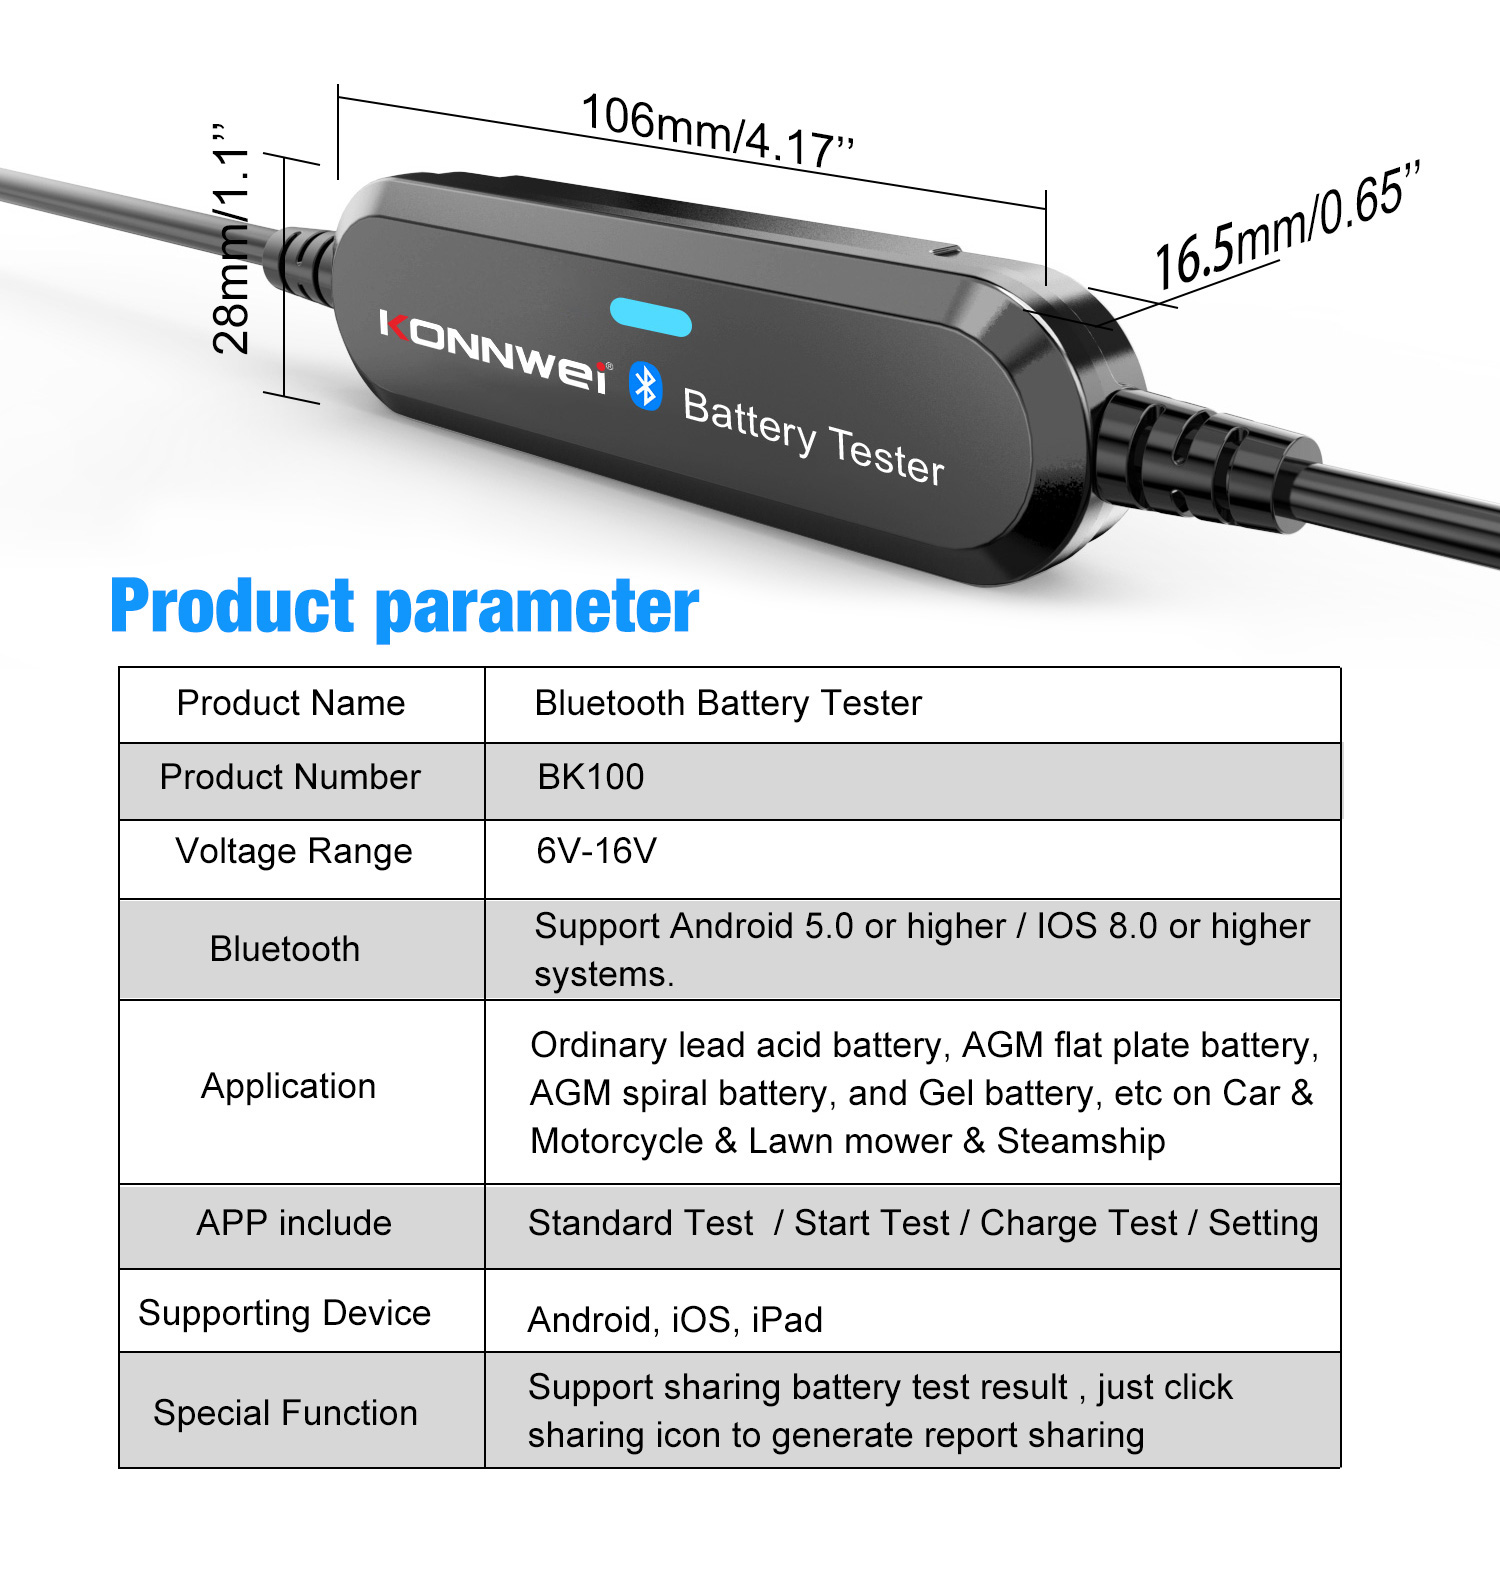 Bluetooth tester batérií Konnwei BK100